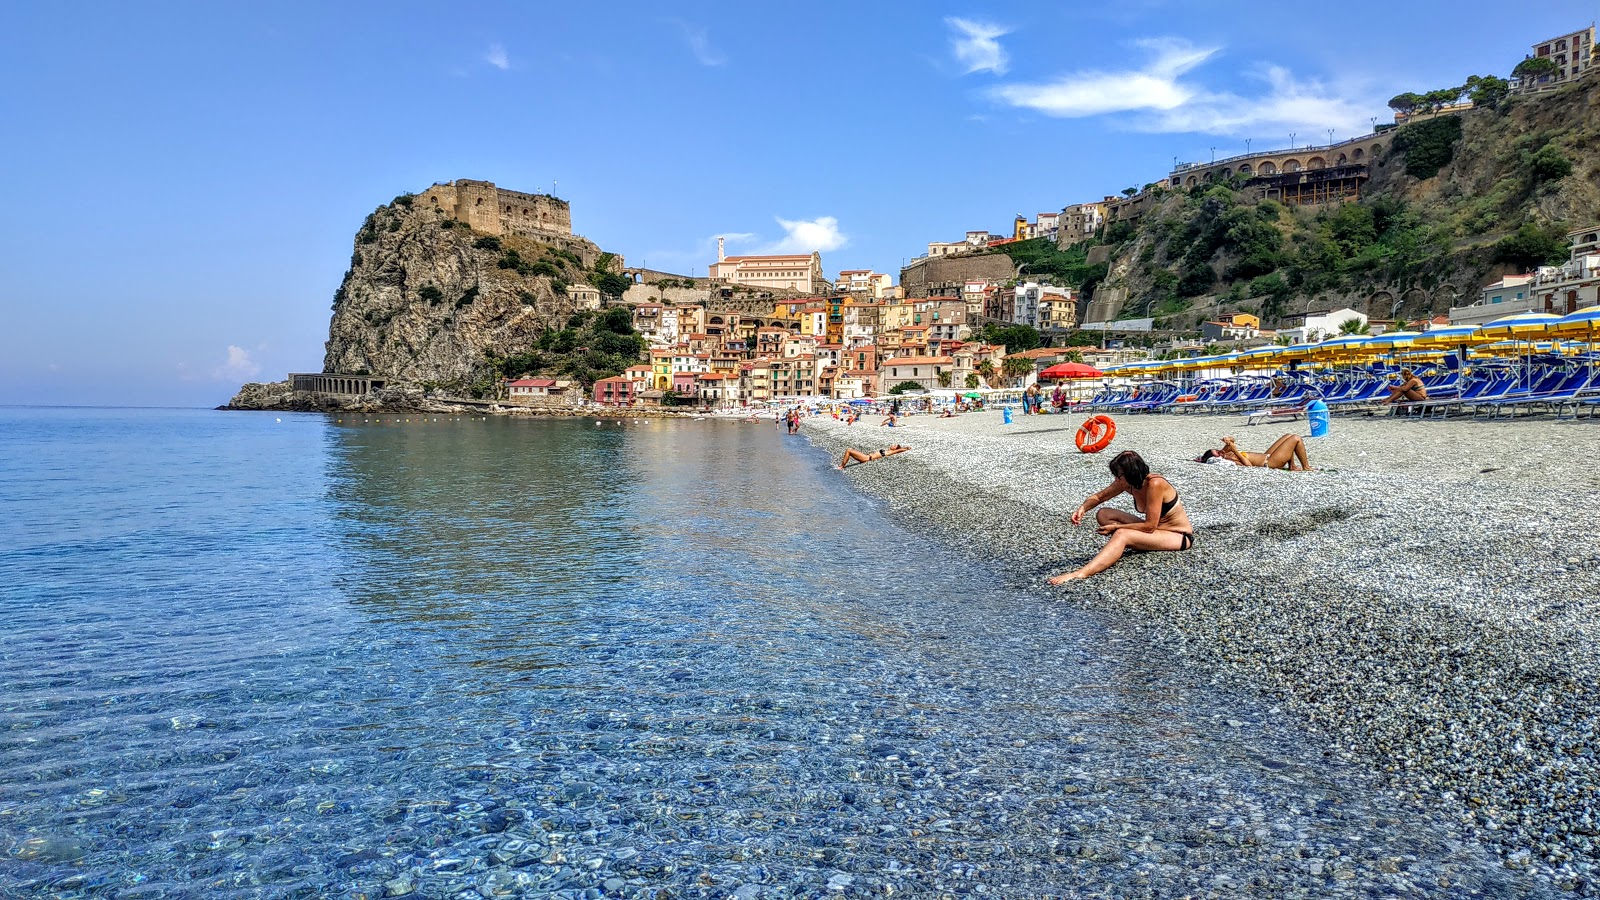 Spiaggia Di Scilla'in fotoğrafı parlak kum yüzey ile